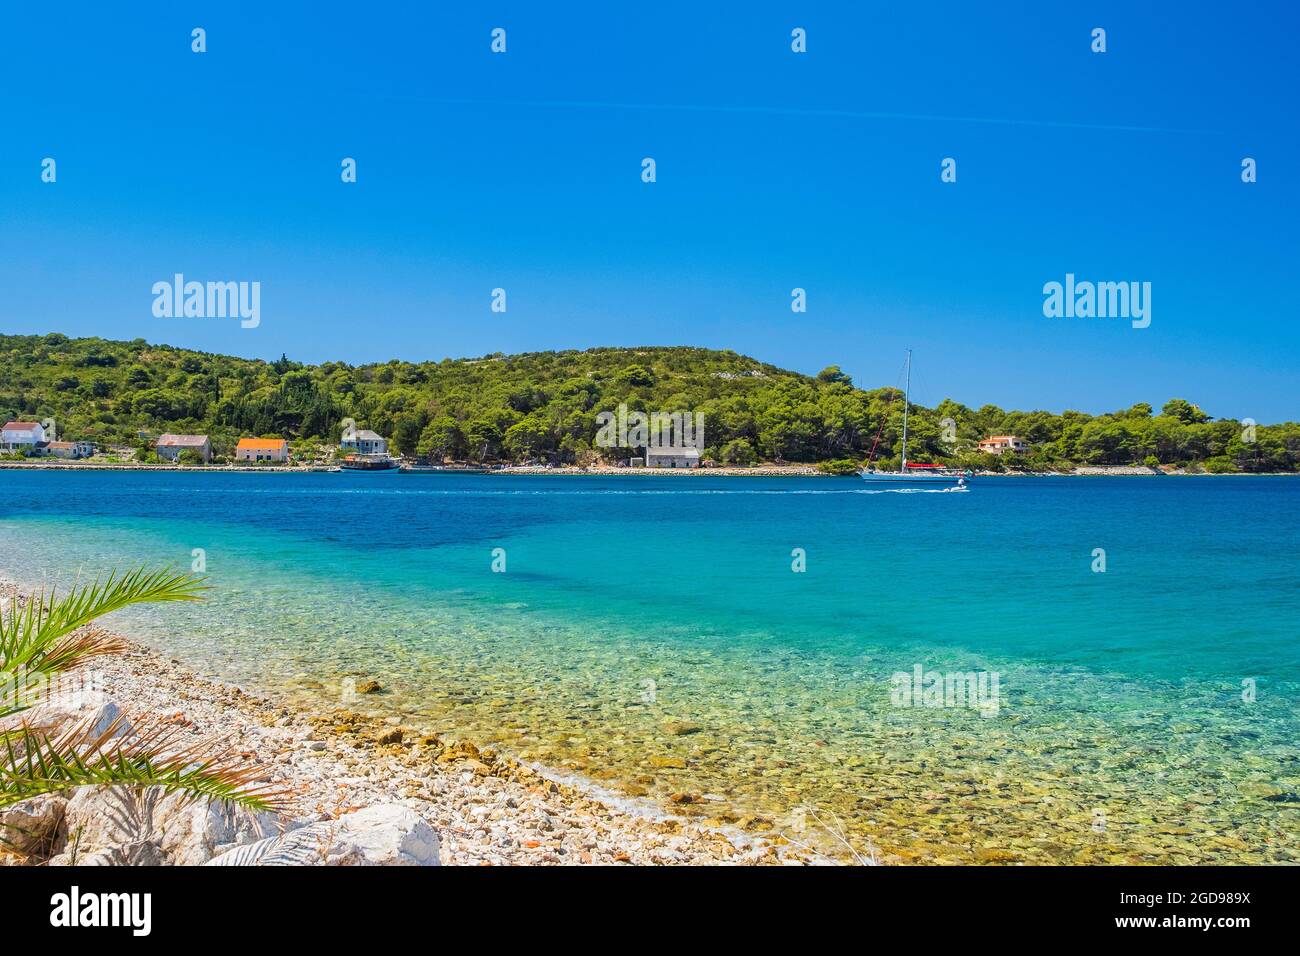 Lagon turquoise sur la côte Adriatique en Croatie. Magnifique paysage méditerranéen. Baie de Soline sur l'île de Dugi Otok. Banque D'Images